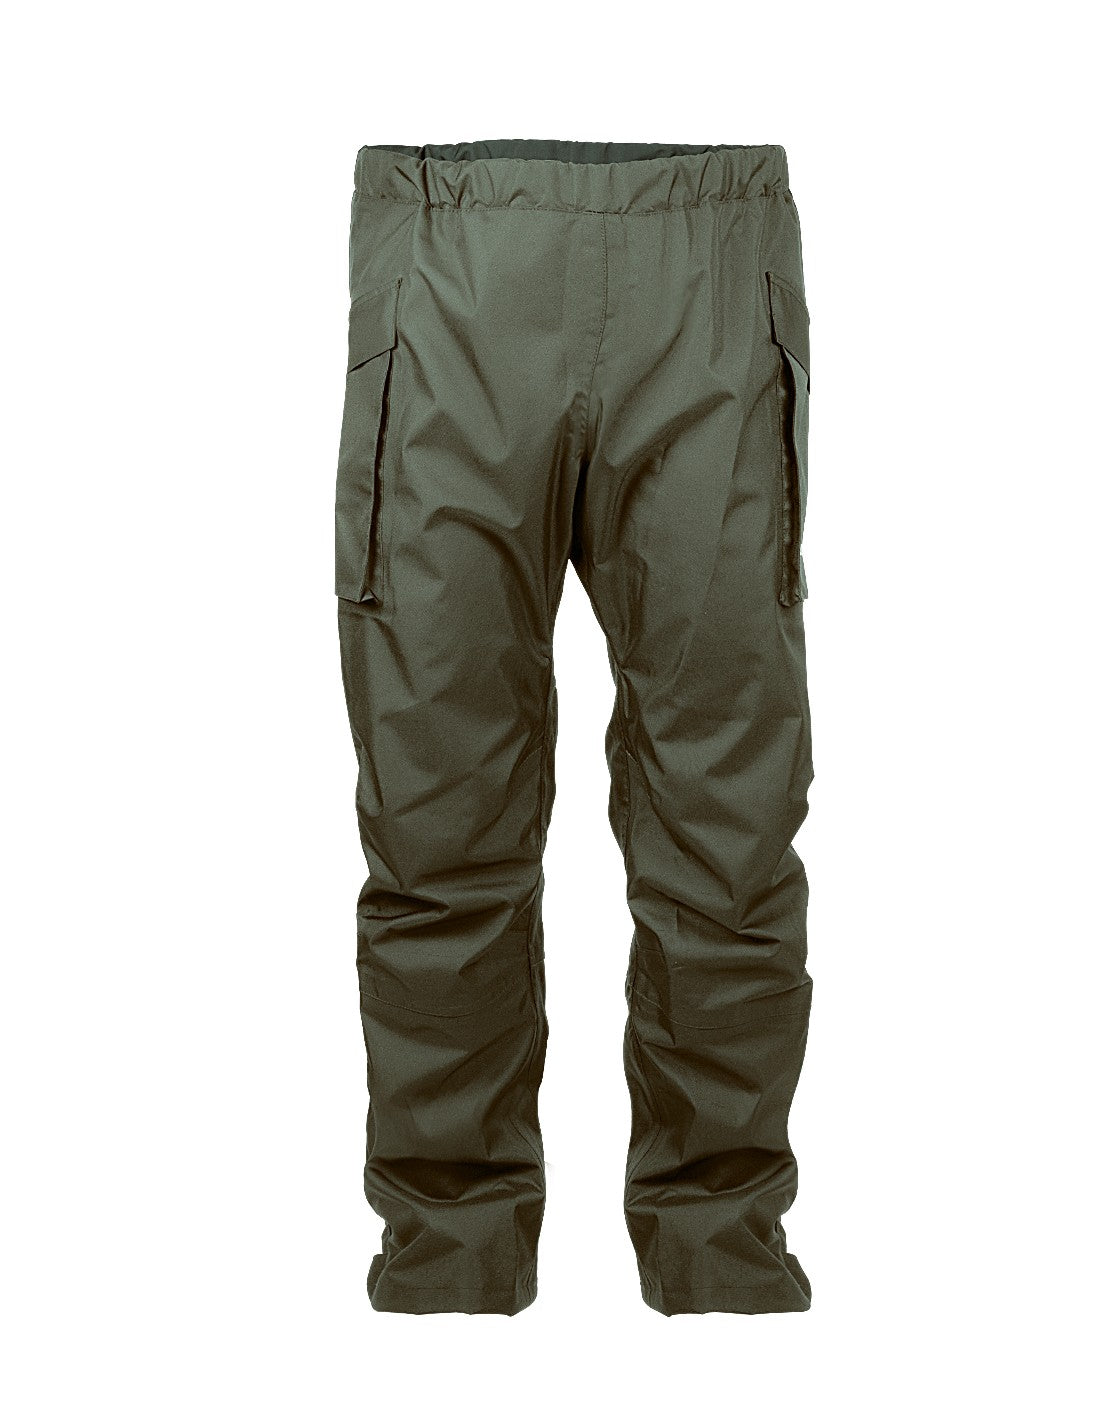 Waterproof Lightweight Trousers - PROS